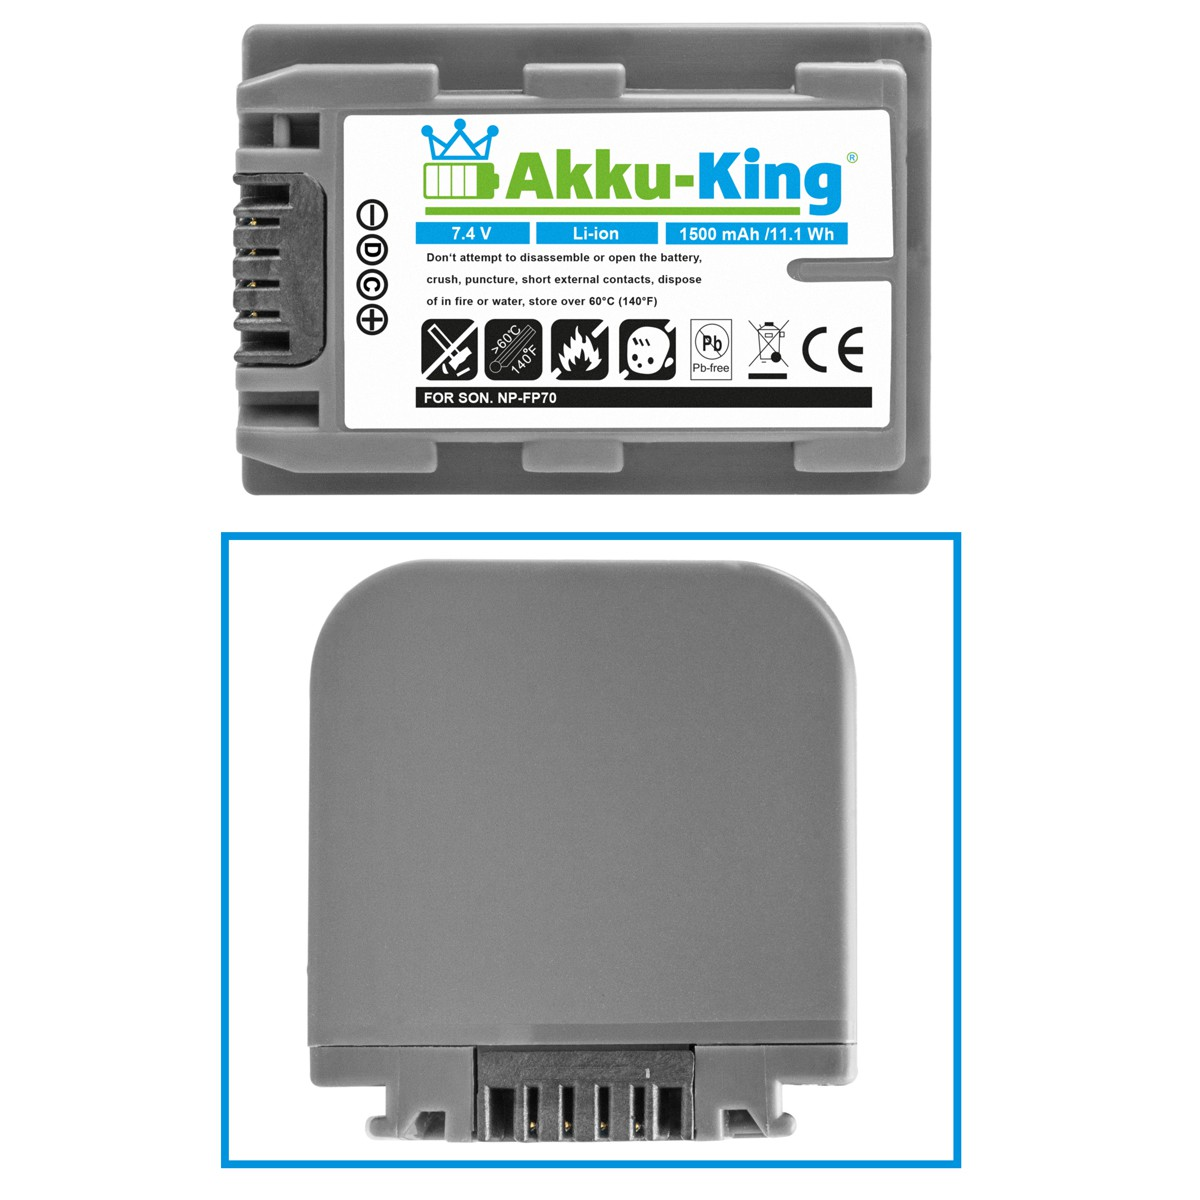 mit 7.4 Sony Akku kompatibel AKKU-KING Volt, Li-Ion Kamera-Akku, NP-FP70 1500mAh